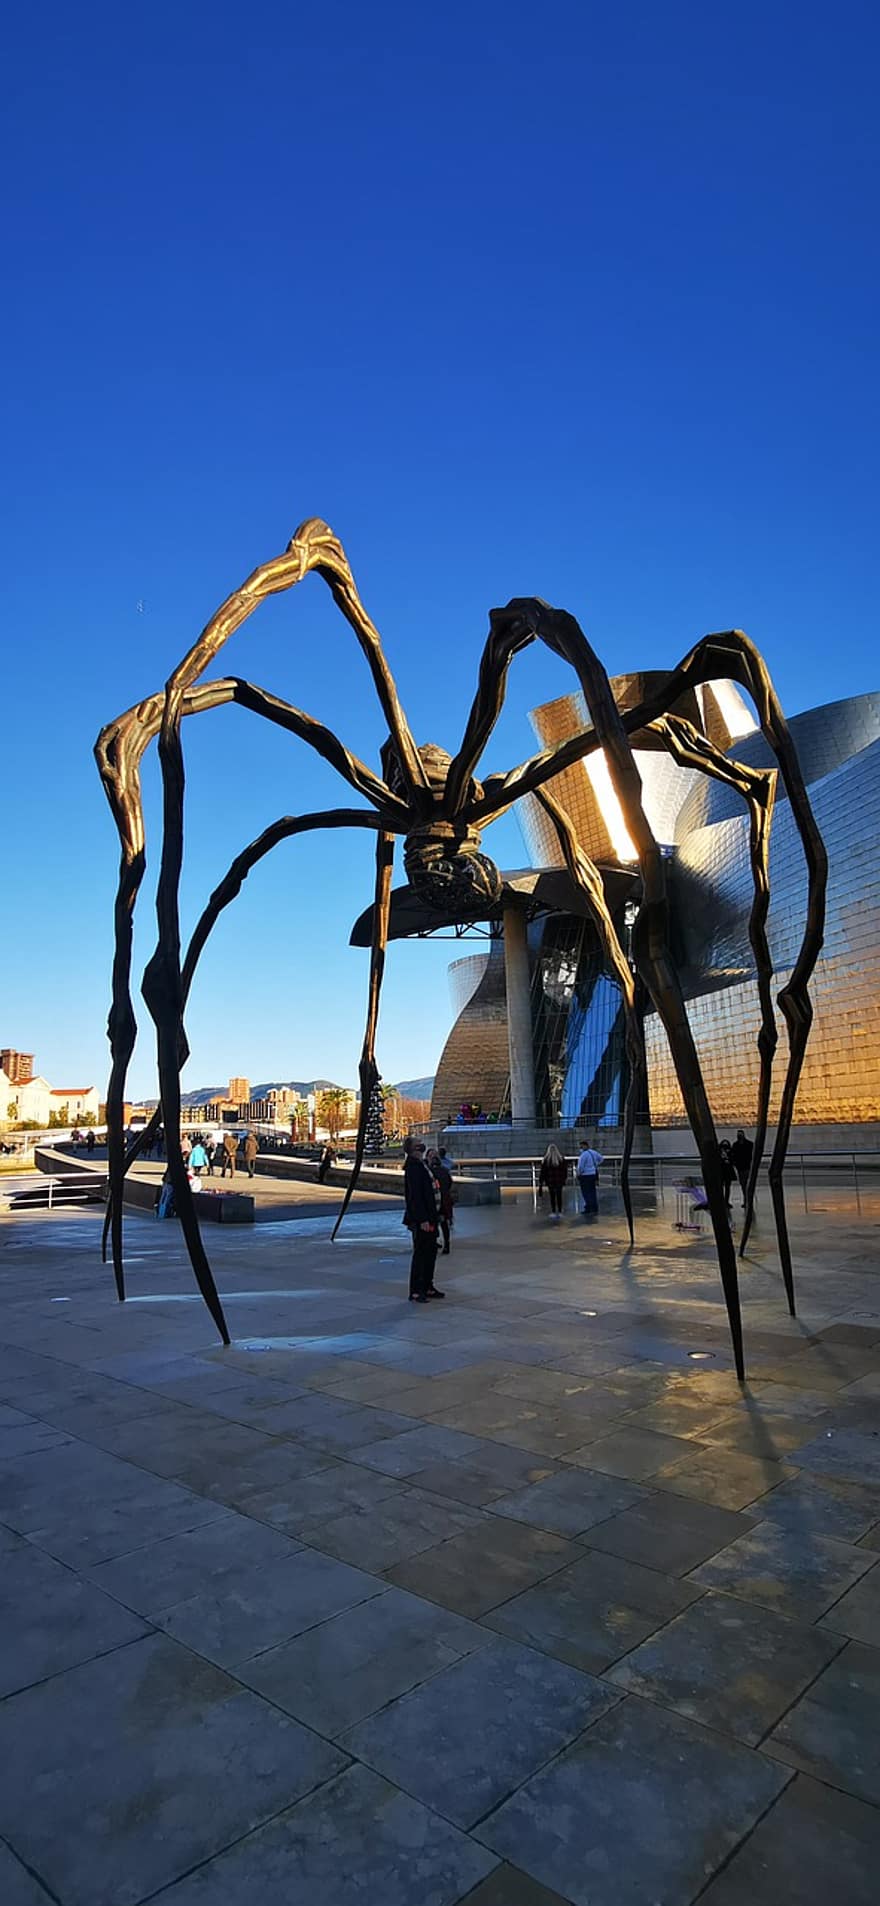 العنكبوت ، متحف ، فن ، إسبانيا ، بلباو ، رجال ، غروب الشمس ، الغسق ، مكان مشهور ، أزرق ، هندسة معمارية